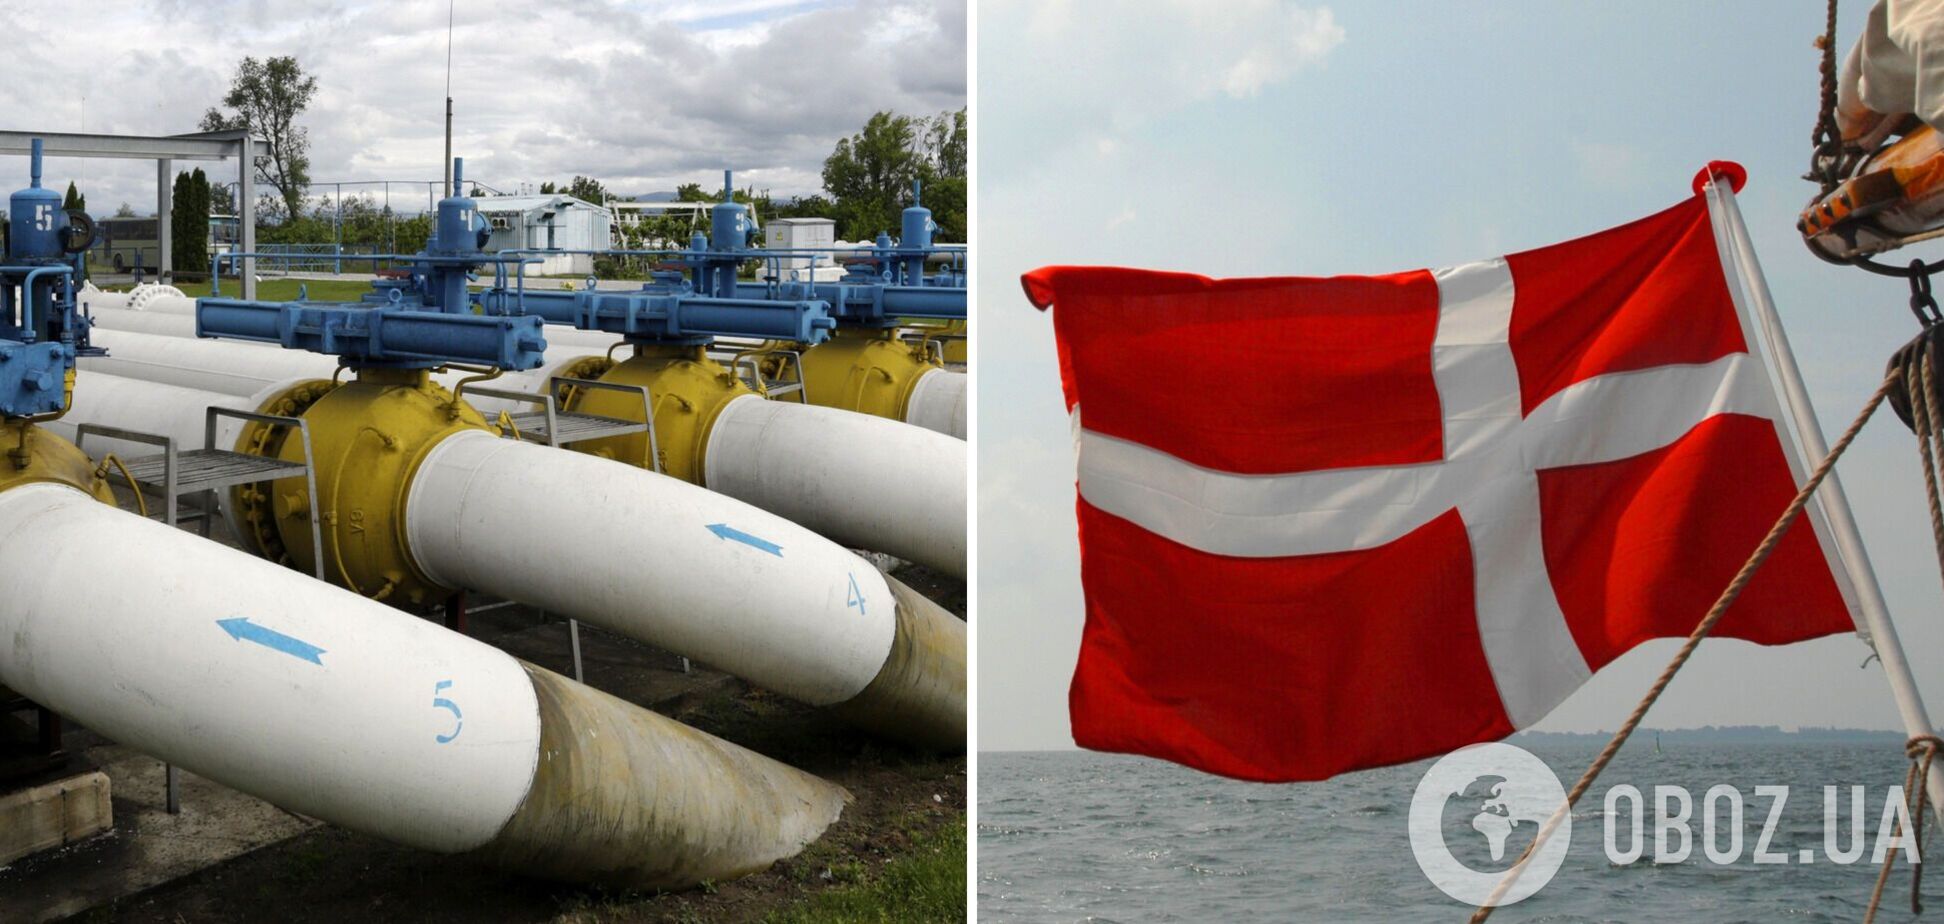 Дания не собирается платить за газ рублями